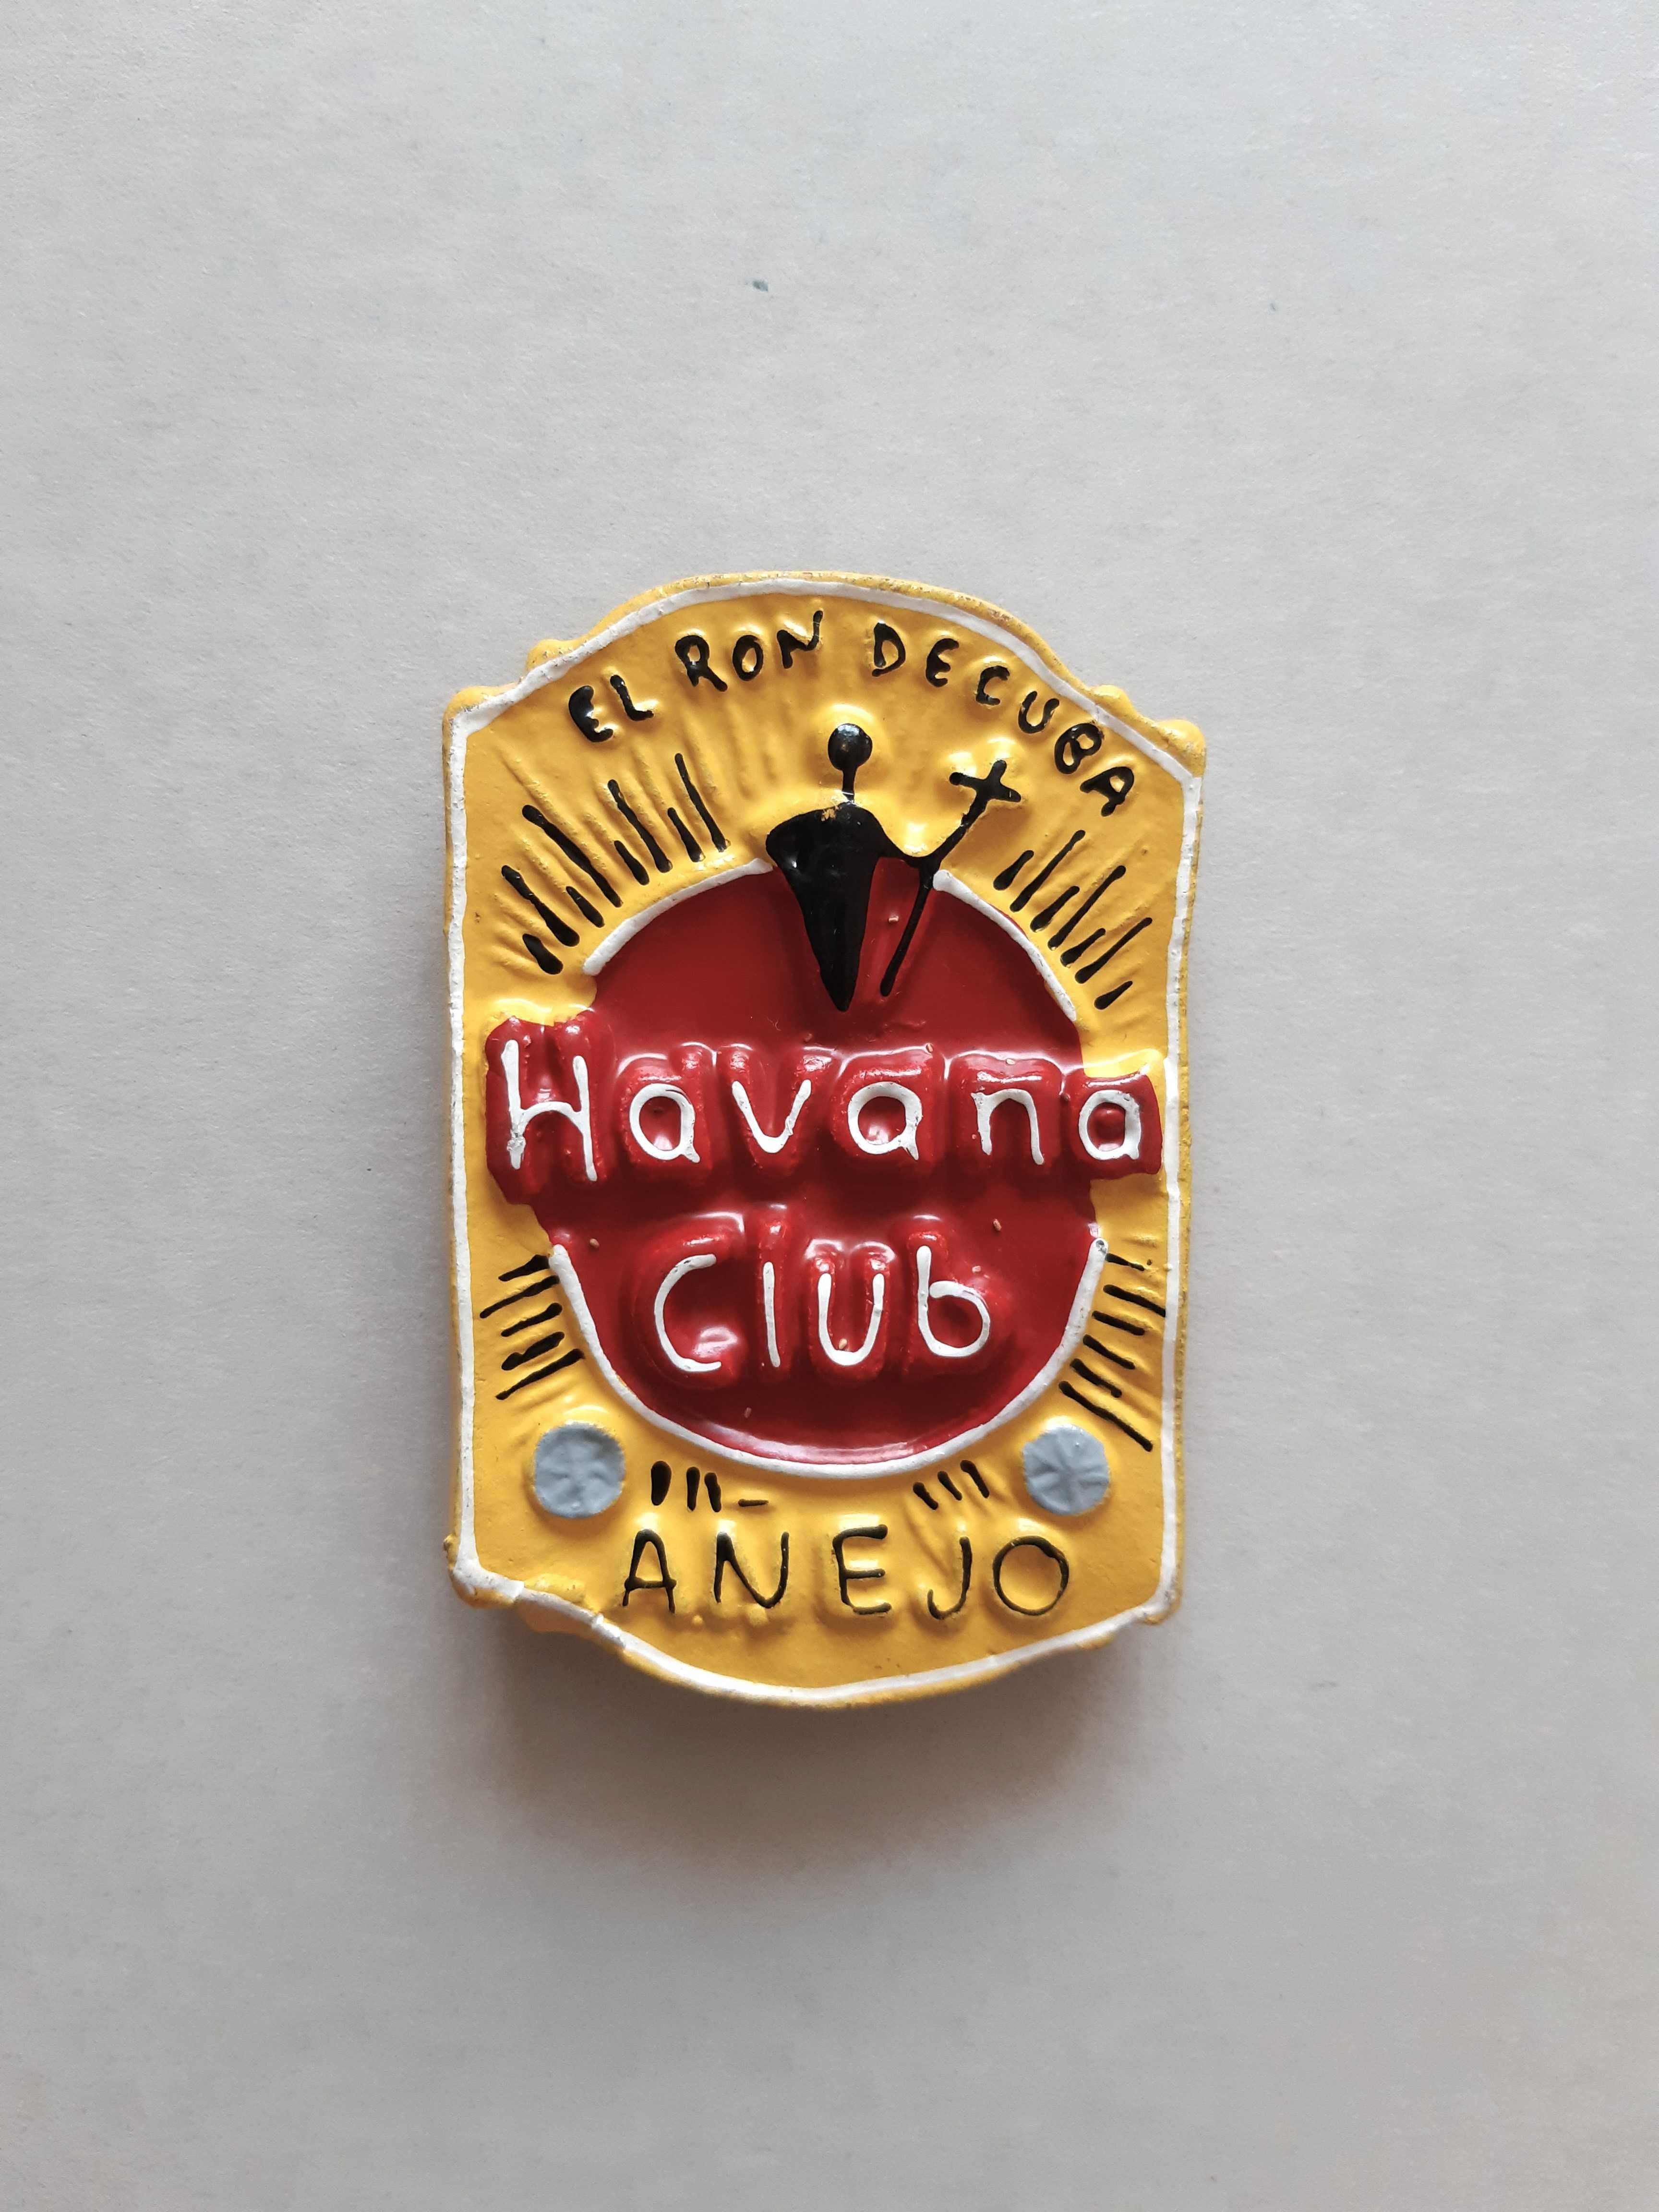 Magnes na lodówkę Kuba, El Ron de Cuba Havana Club Anejo